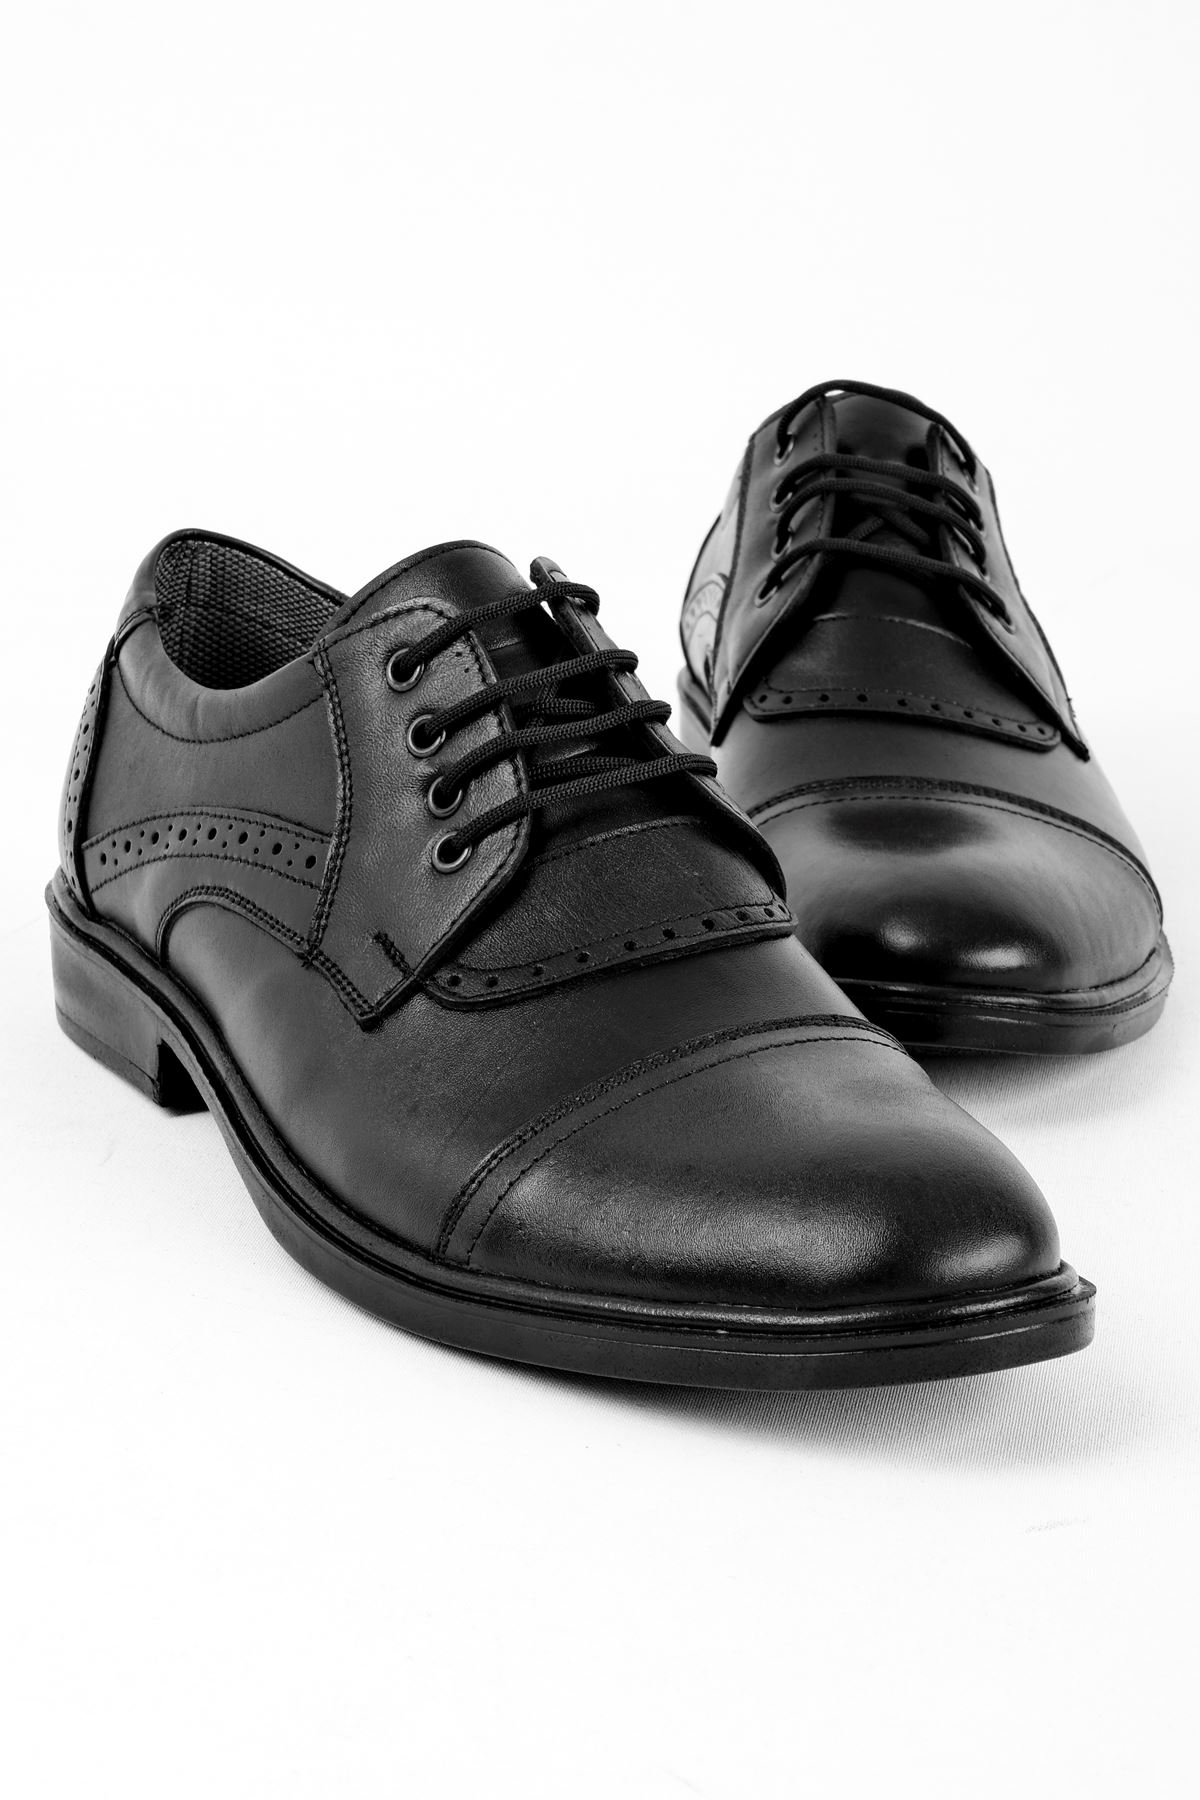 Vitela Erkek Hakiki Deri Ayakkabı Klasik-siyah